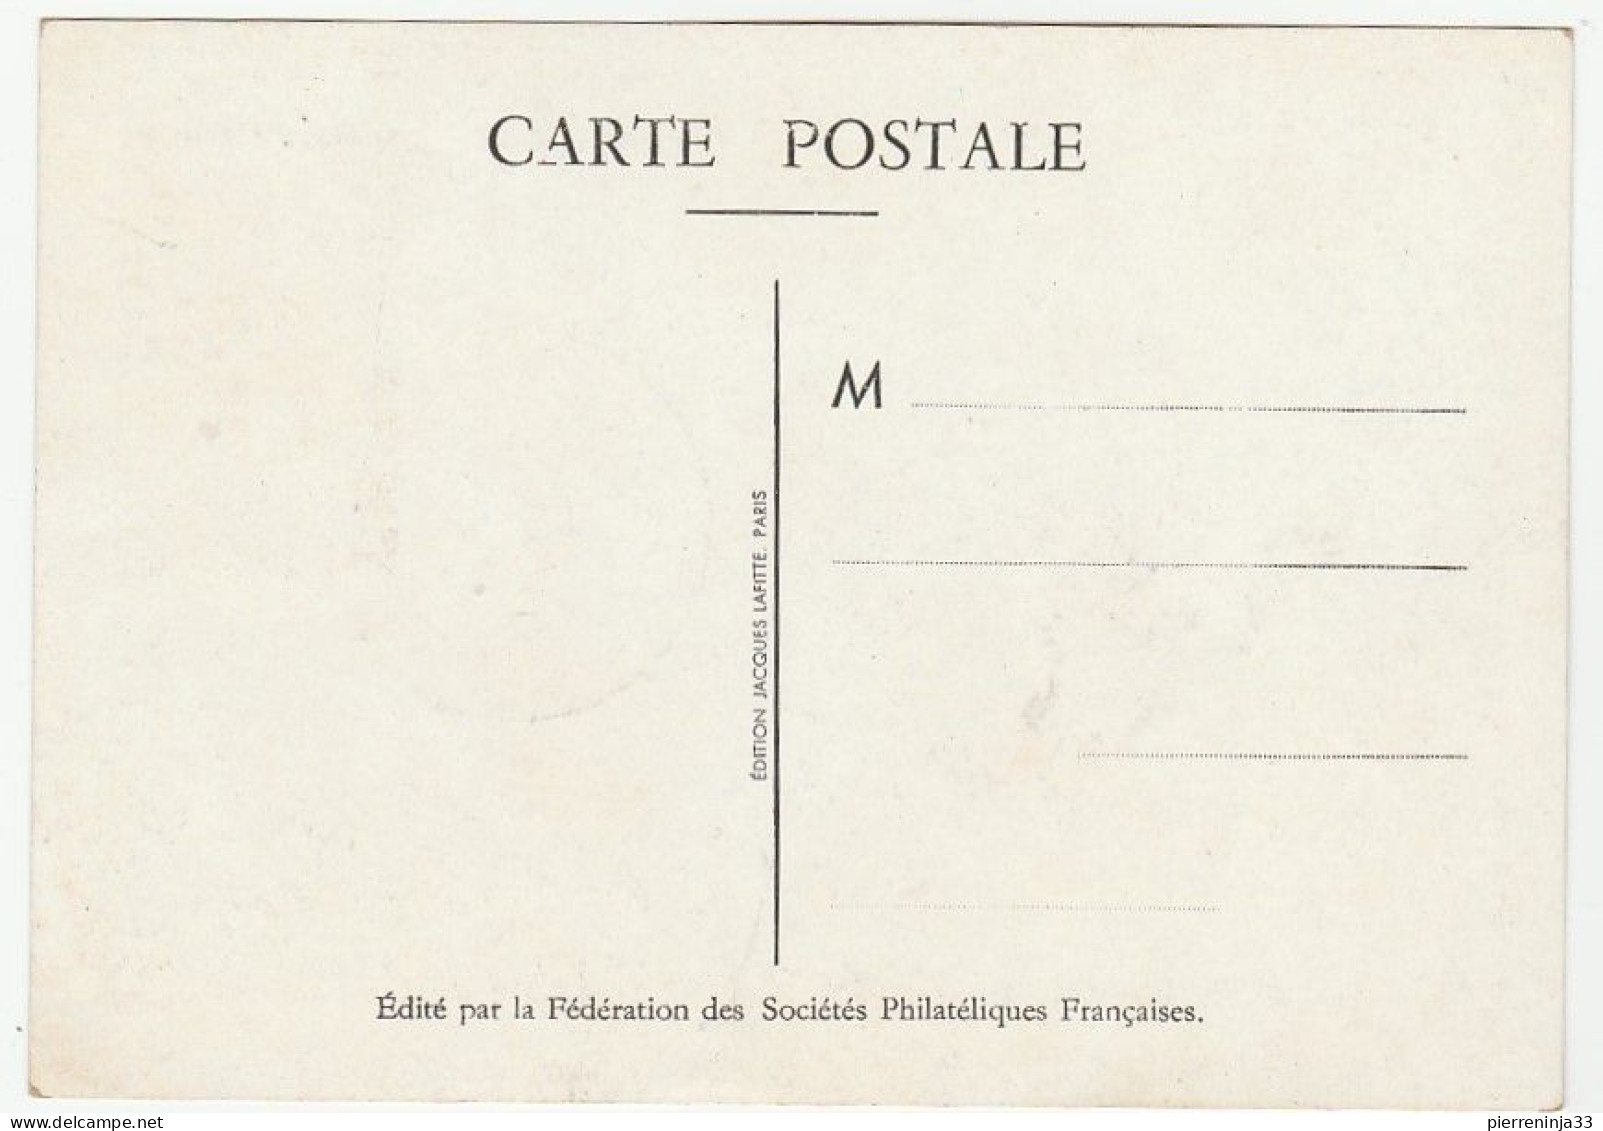 Carte Journée Du Timbre, Nice, 1947 - Covers & Documents